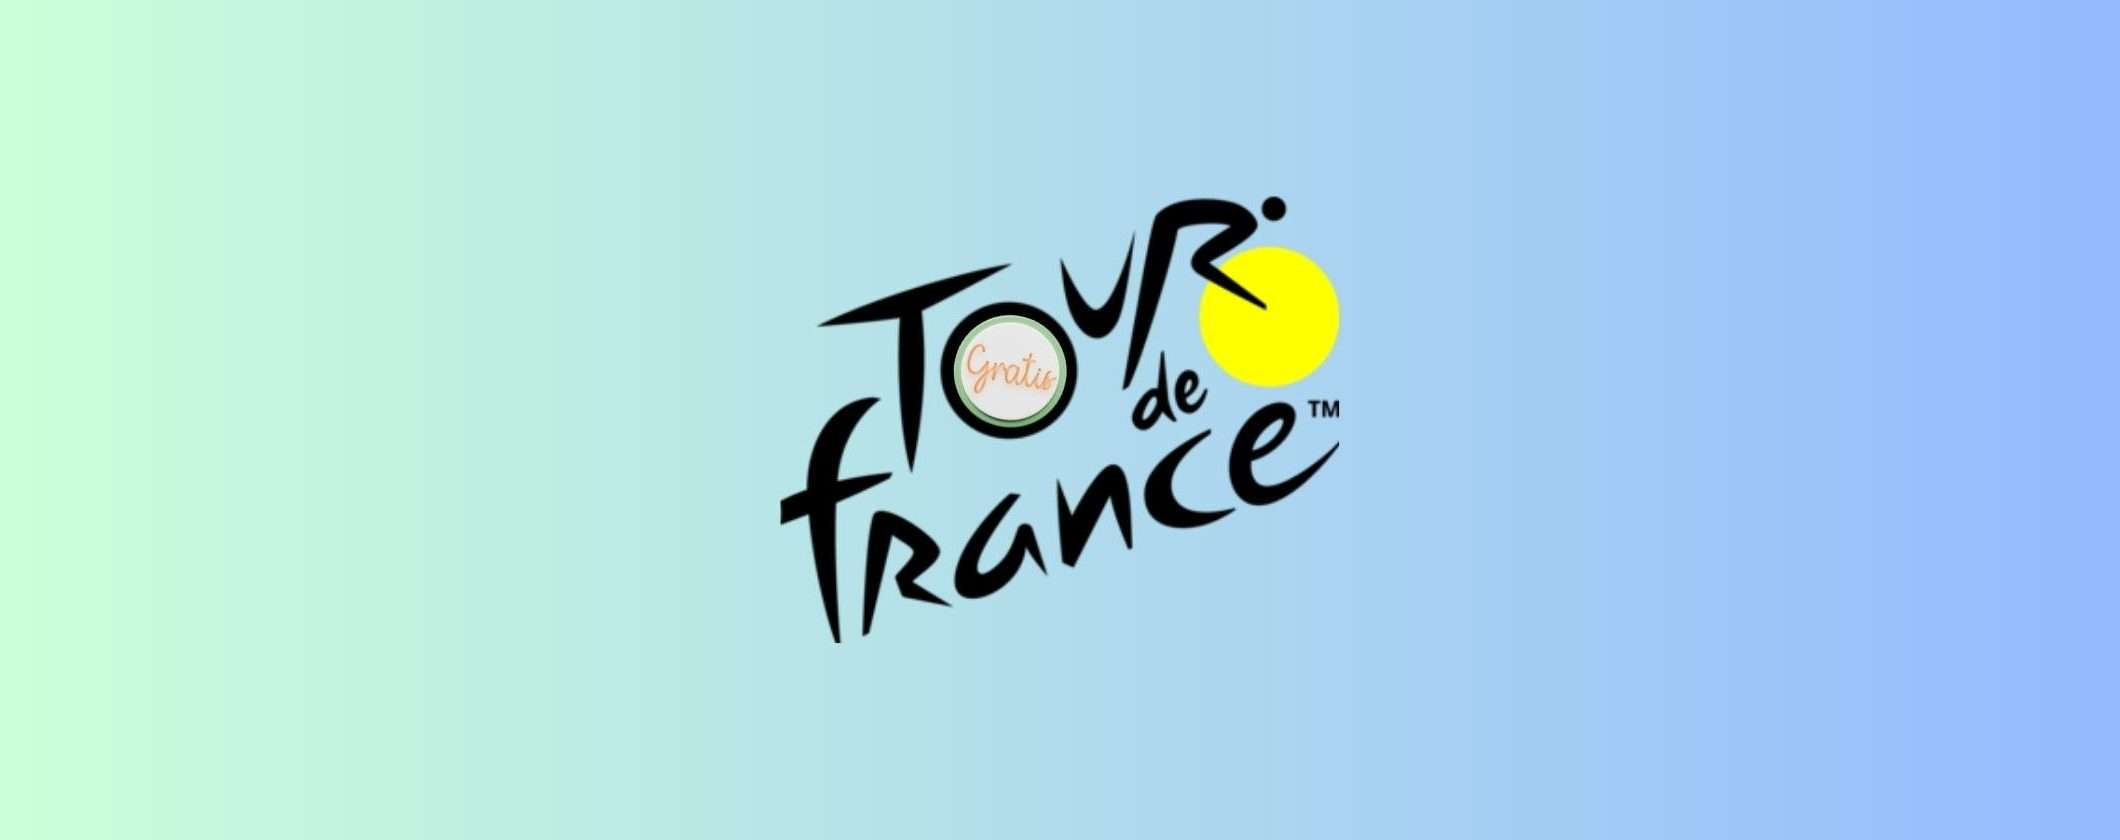 Tour de France: come vedere la diretta GRATIS in streaming